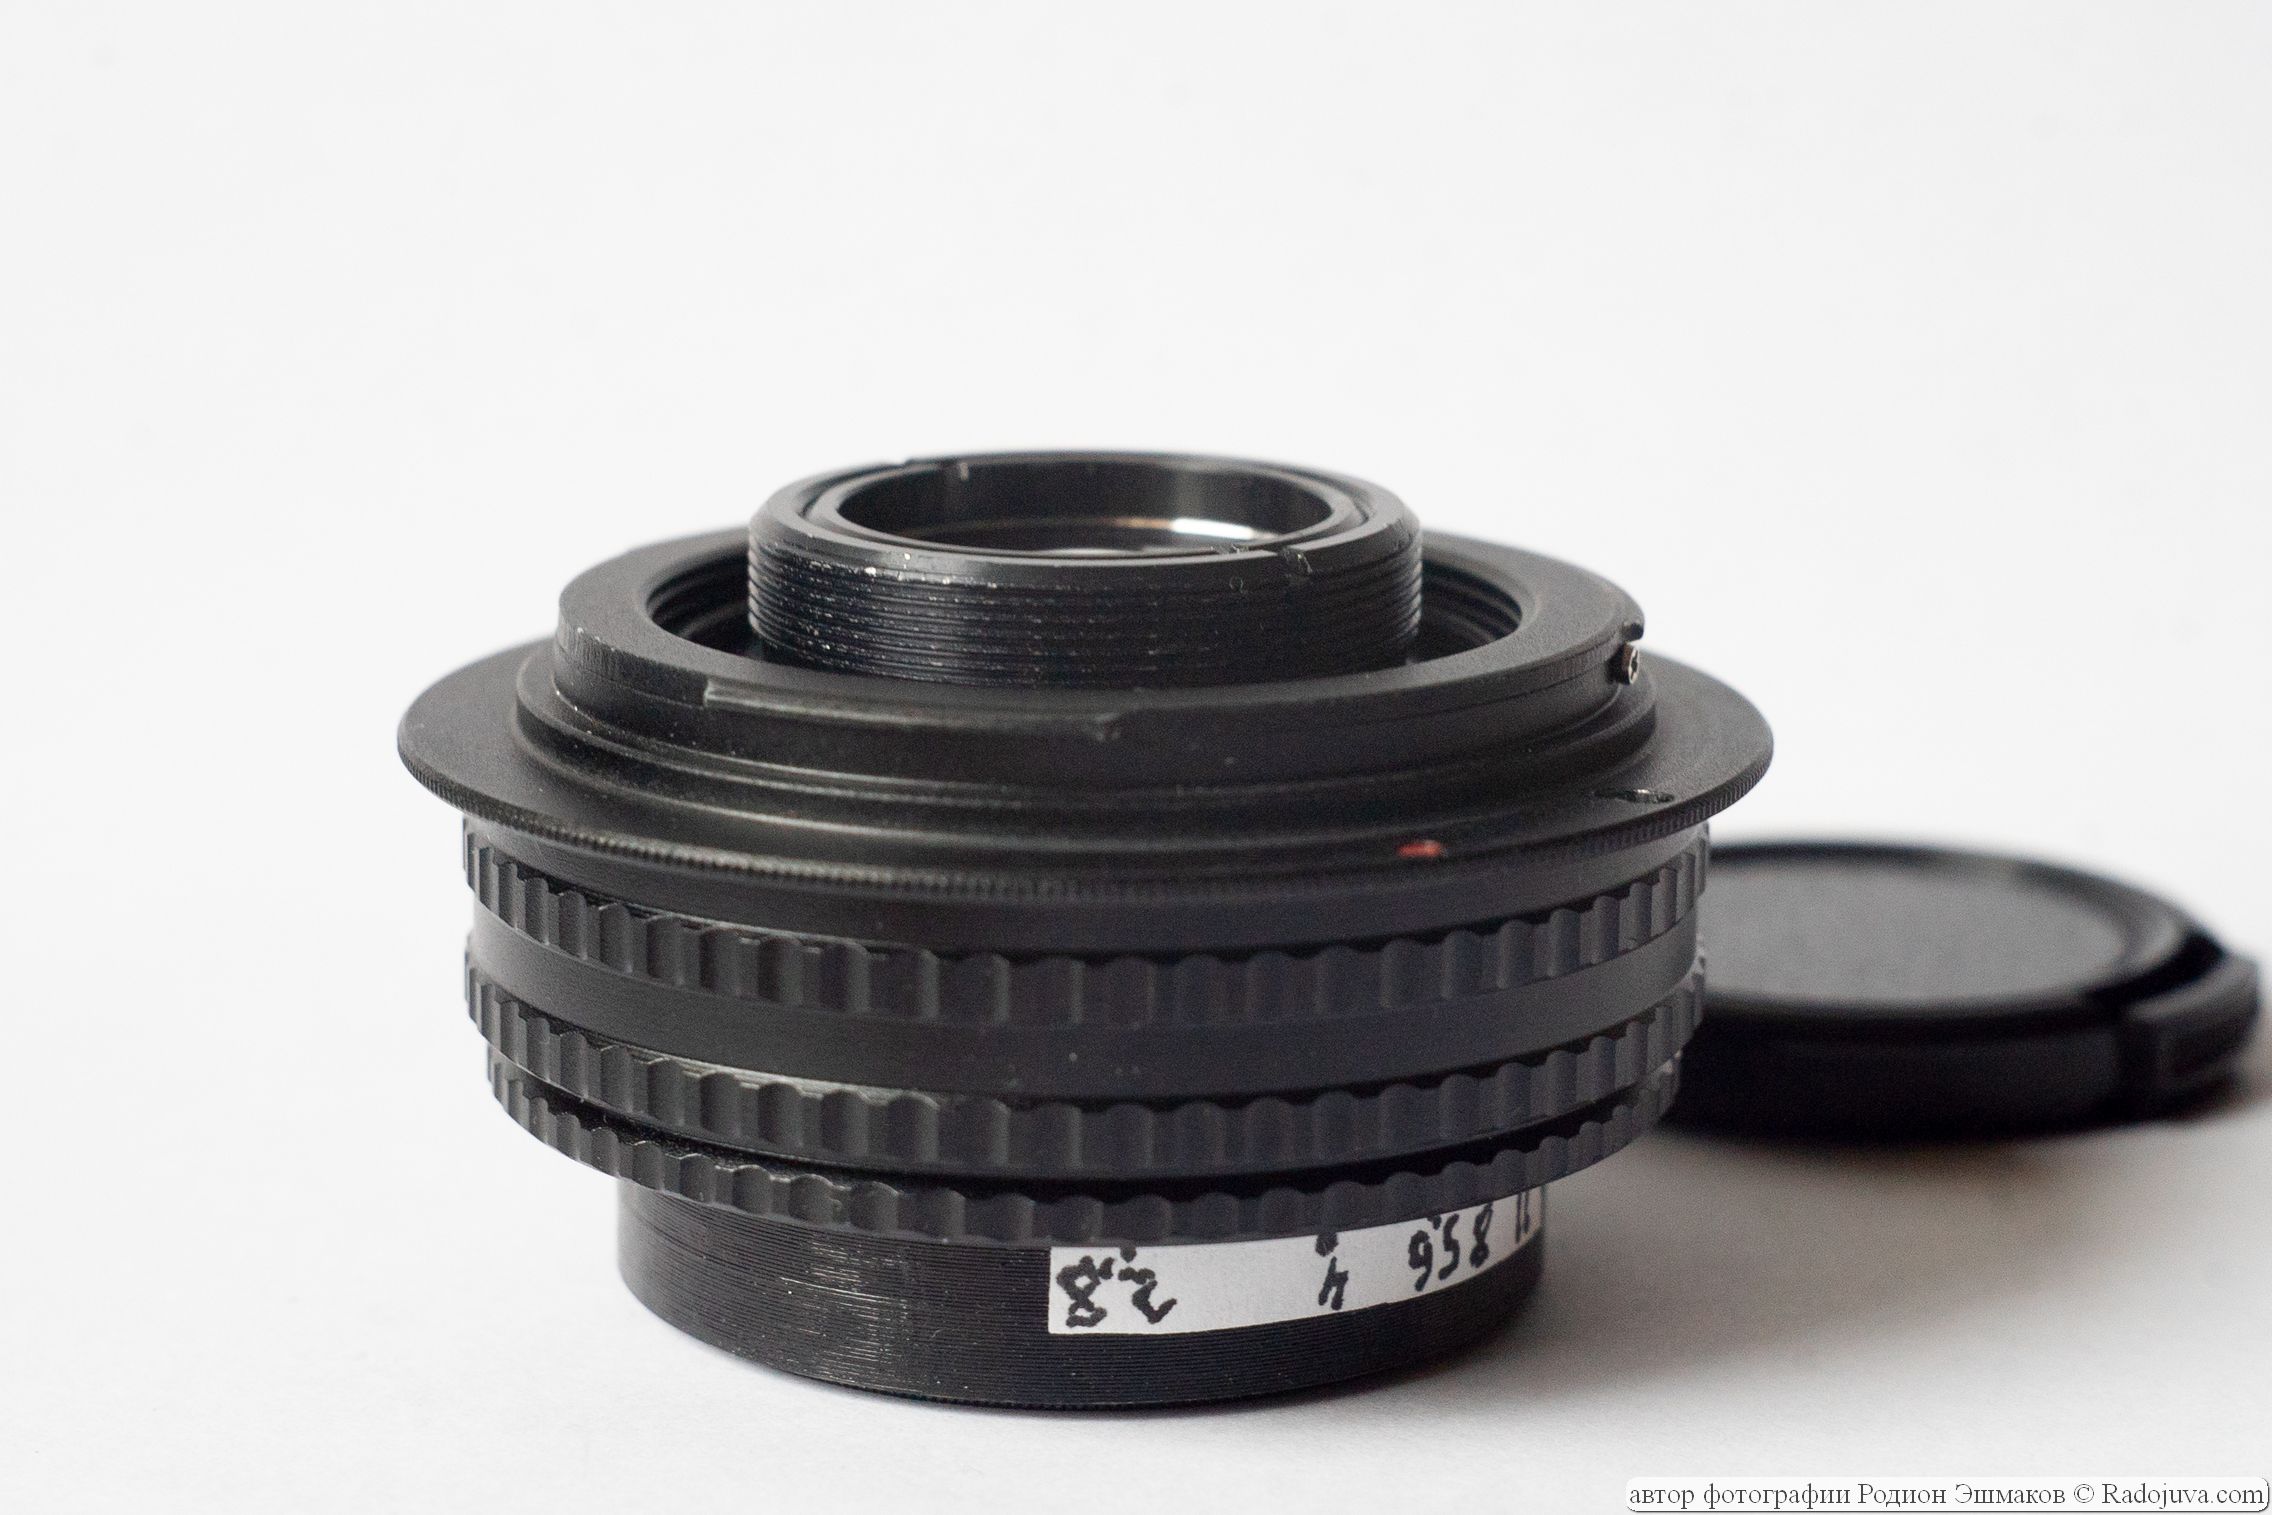 La parte posterior del bloque de la lente que sobresale más allá del plano de la bayoneta es el motivo de la incompatibilidad con las cámaras SLR de fotograma completo.